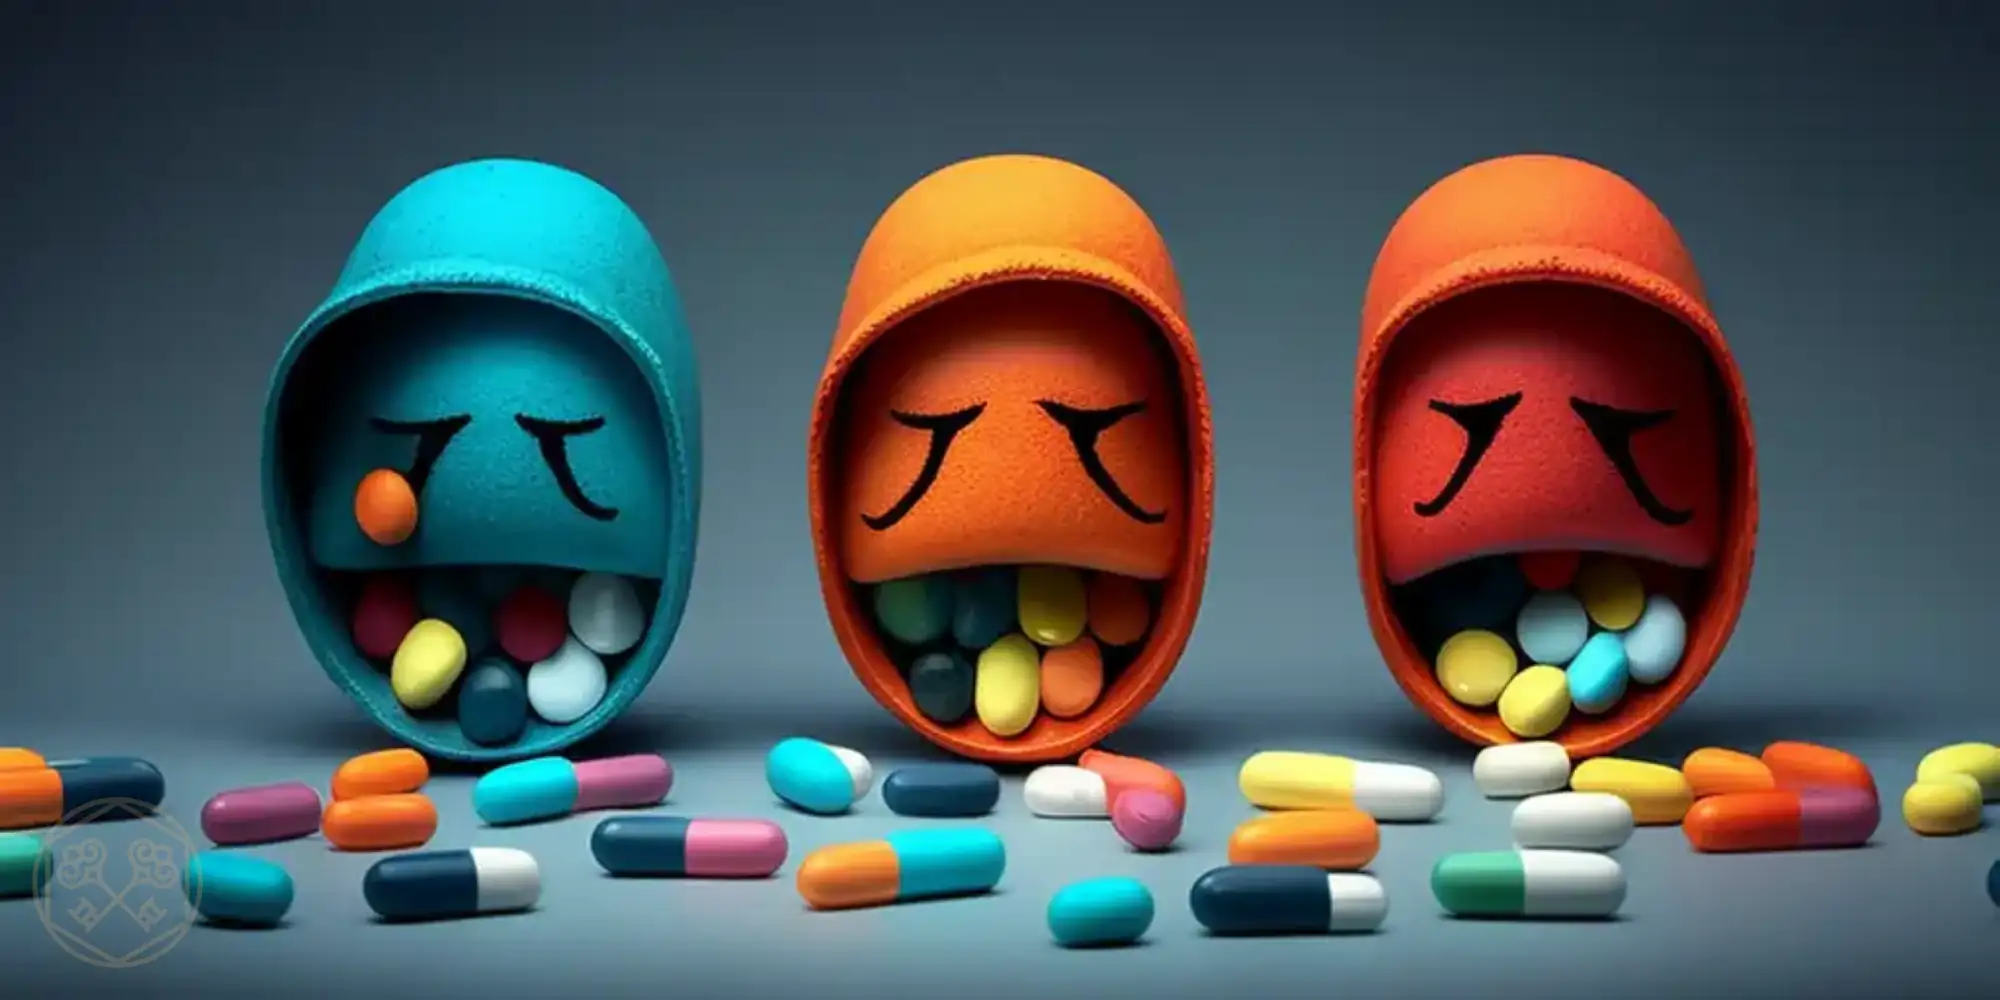 Злоупотребление антидепрессантами